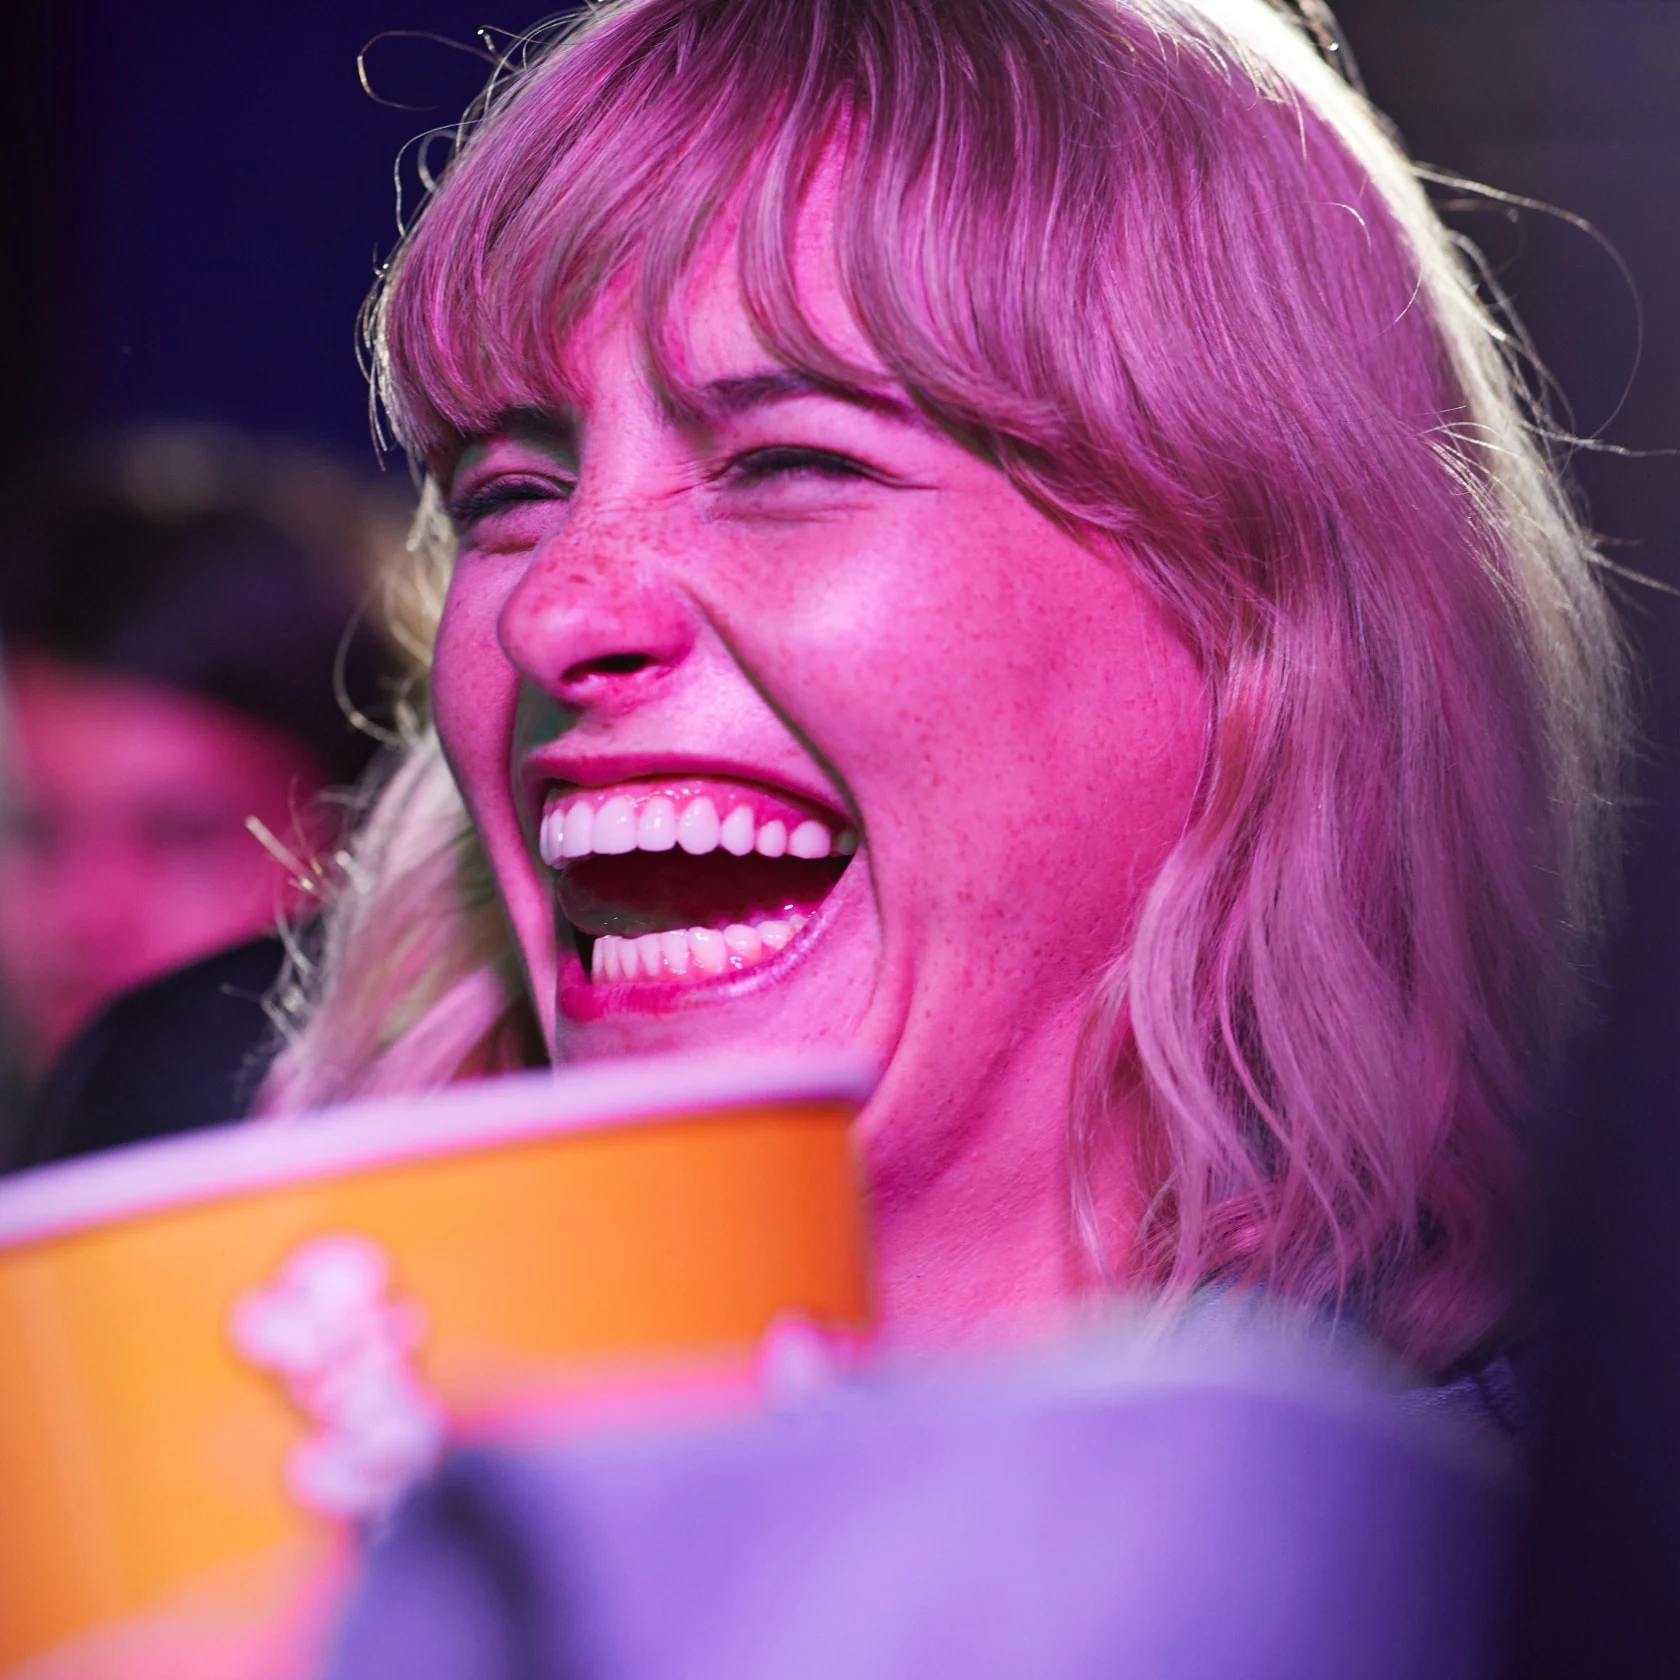 Mulher rindo no cinema com um grande balde de pipoca